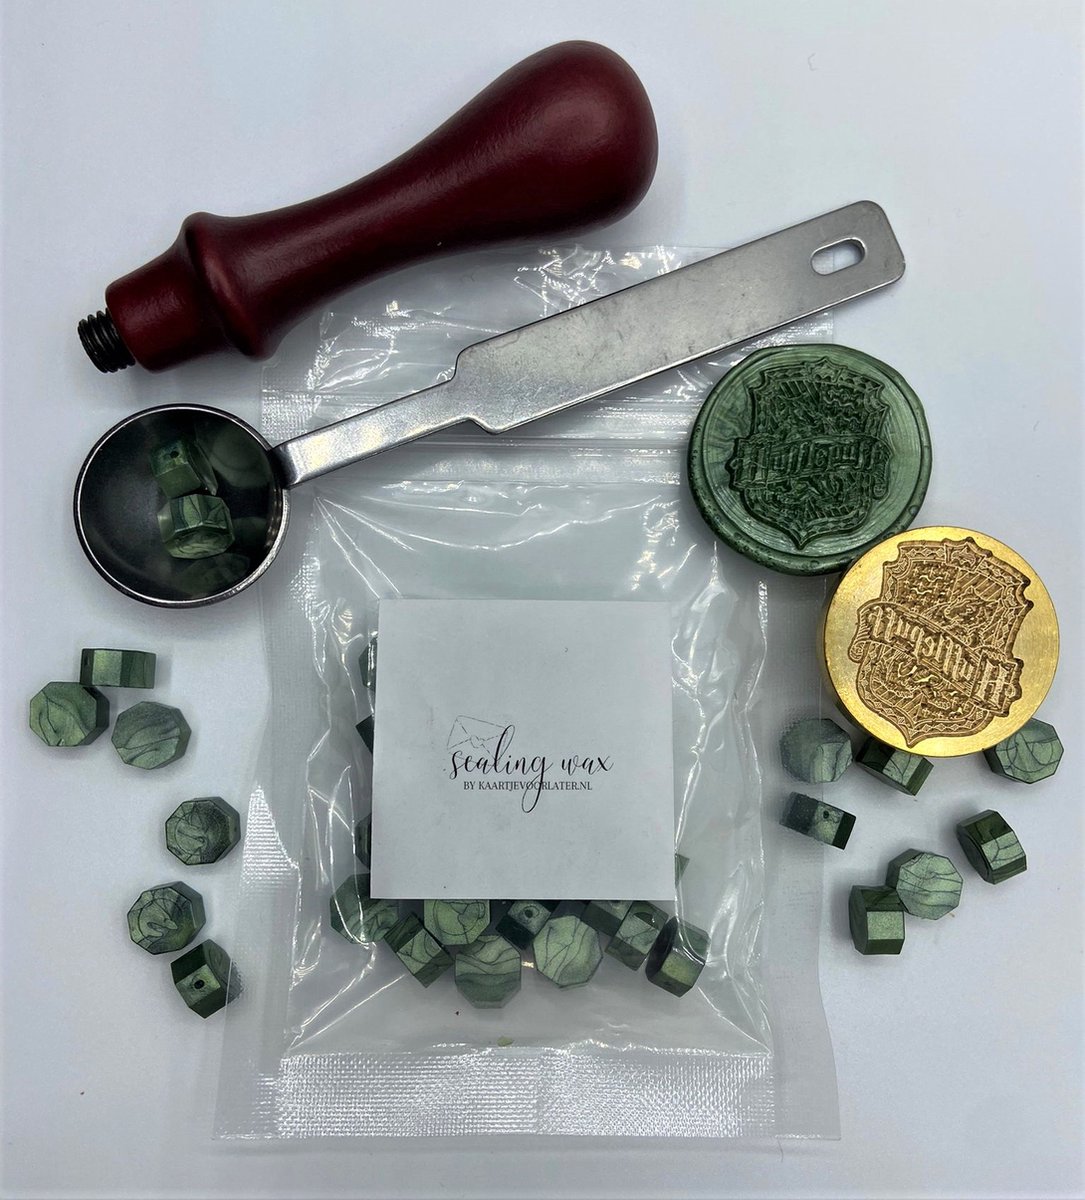 SET: Smeltlepel & Stempel voor het maken van Waxzegels & lakzegels - Harry Potter Huffelpuff - Incl. 20 waxzegels groen